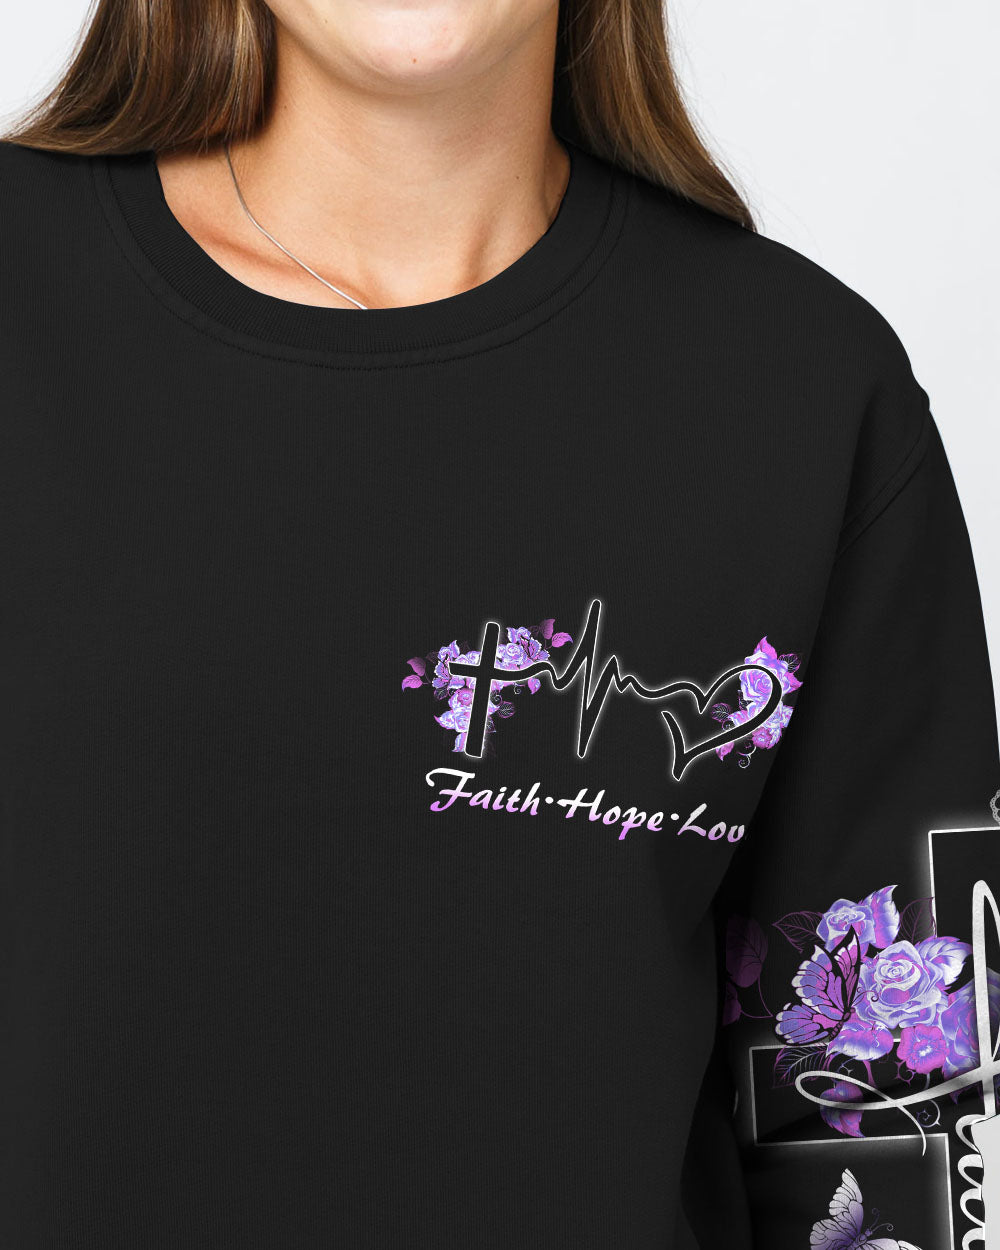 Butterfly Purple Cross Faith Women's Christian Sweatshirt